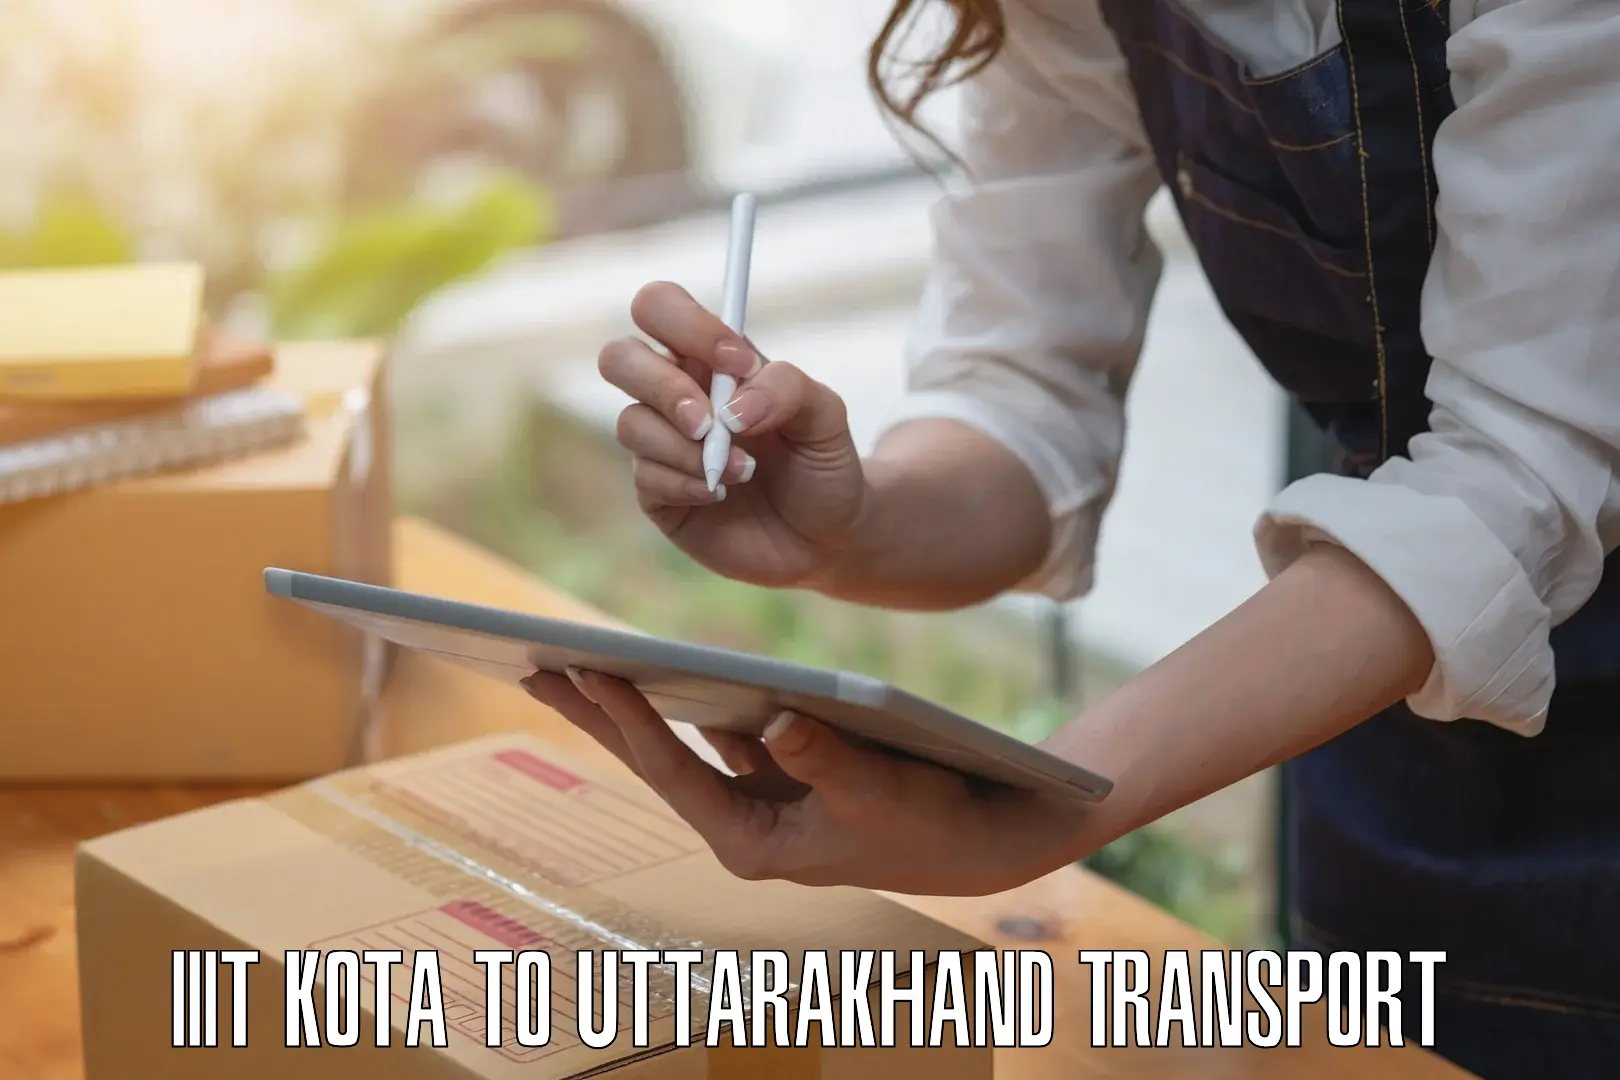 Pick up transport service IIIT Kota to Someshwar